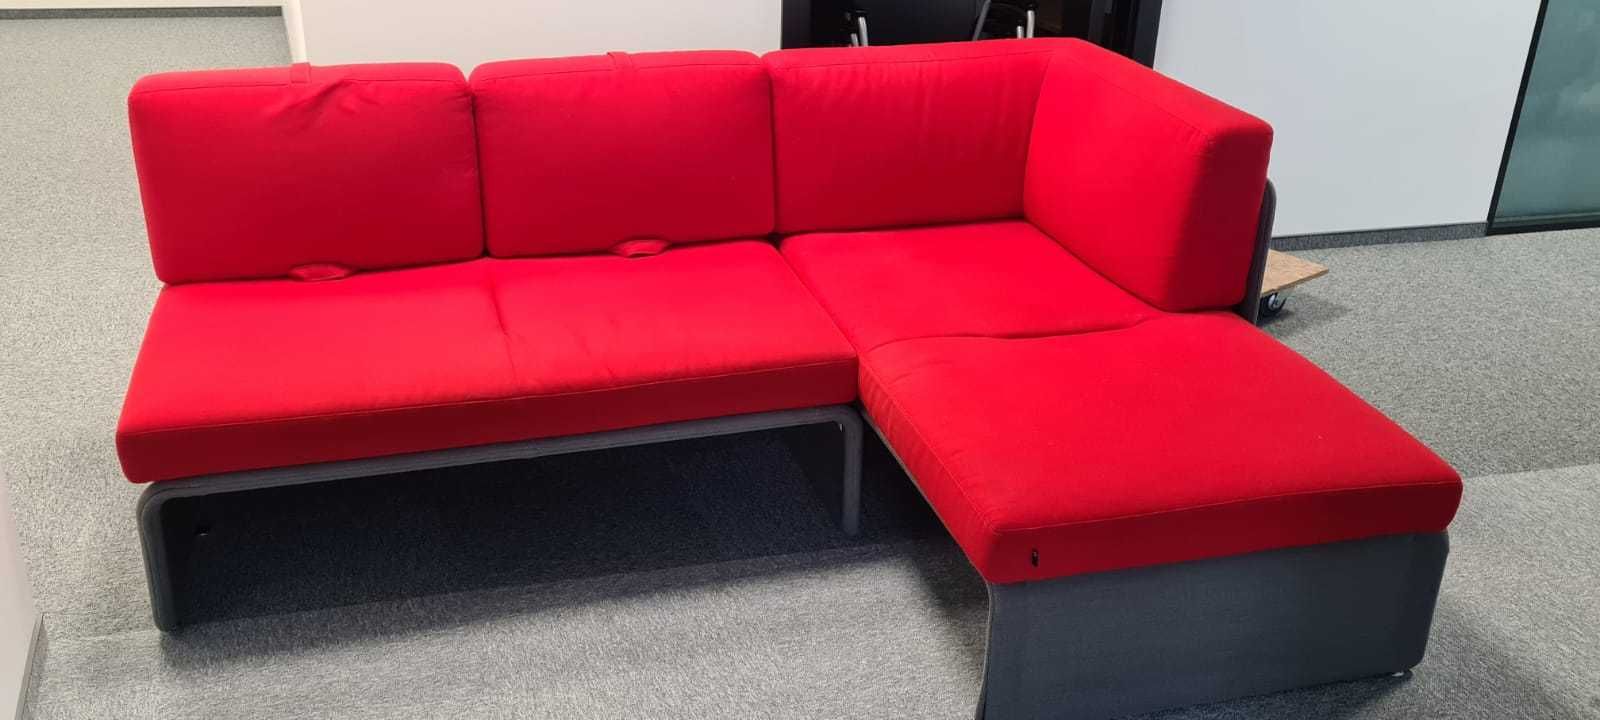 Narożnik czerwony sofa biurowa firma Coalesse